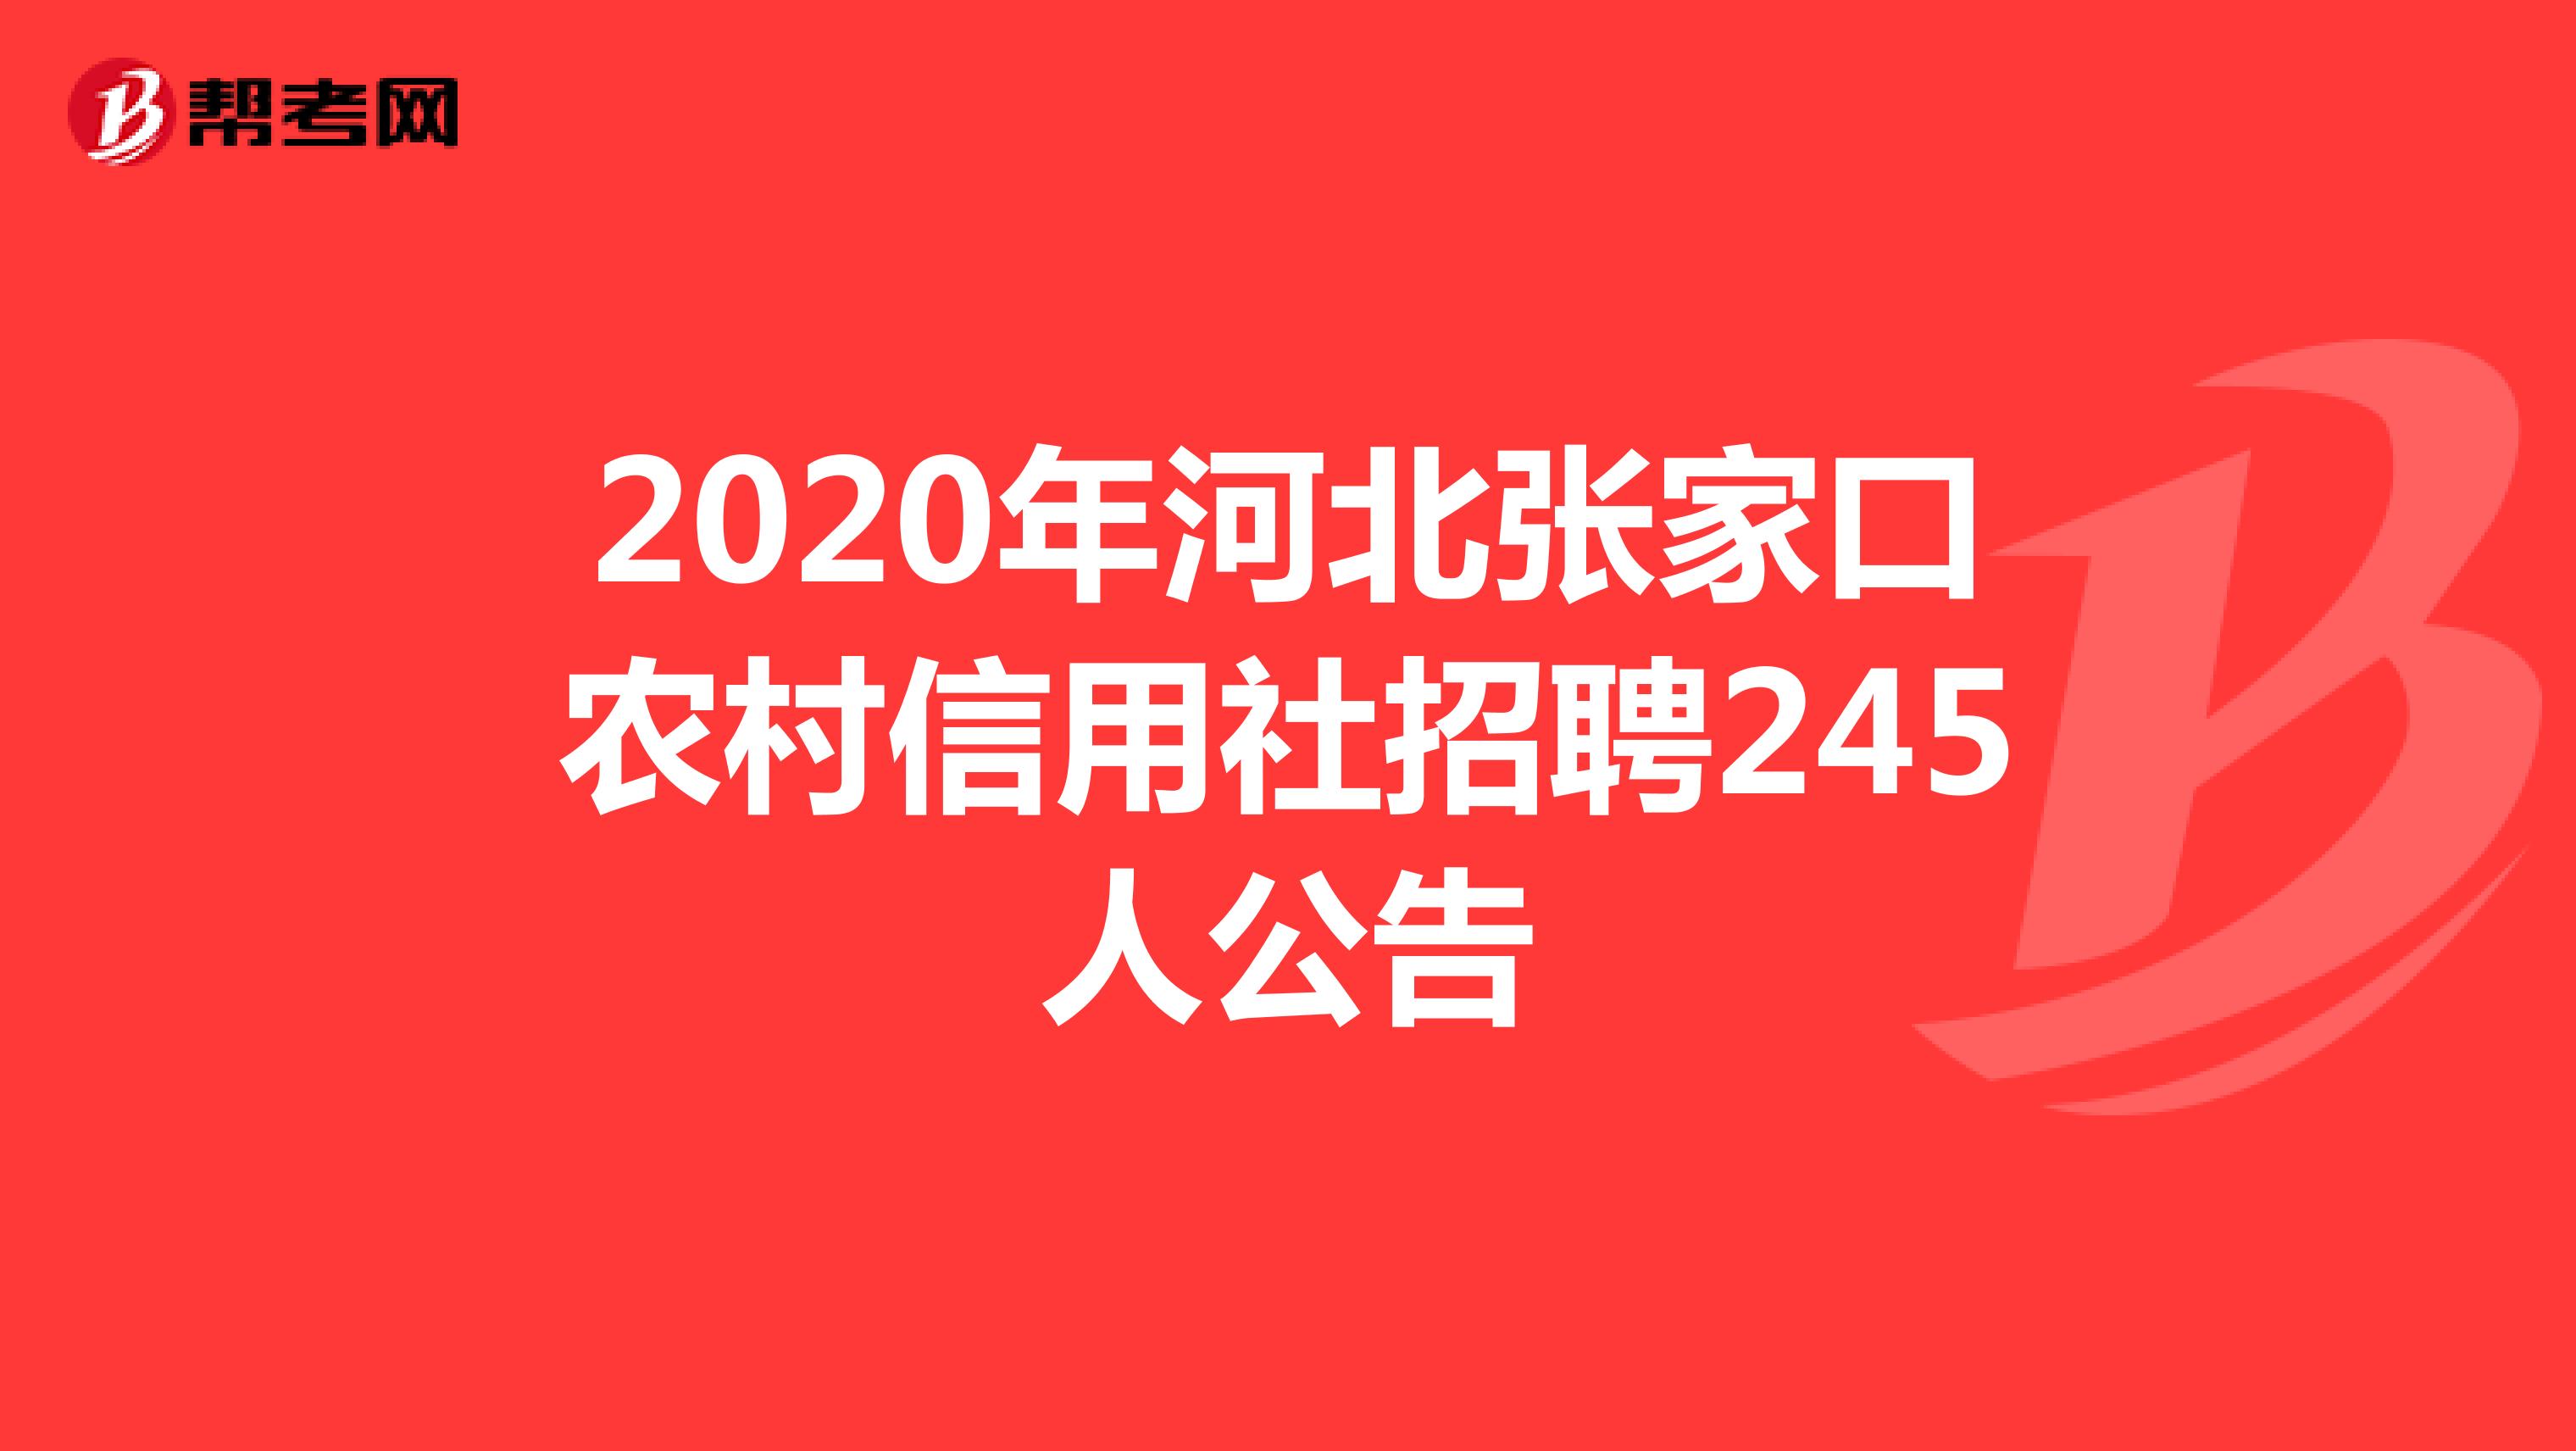 2020年河北张家口农村信用社招聘245人公告